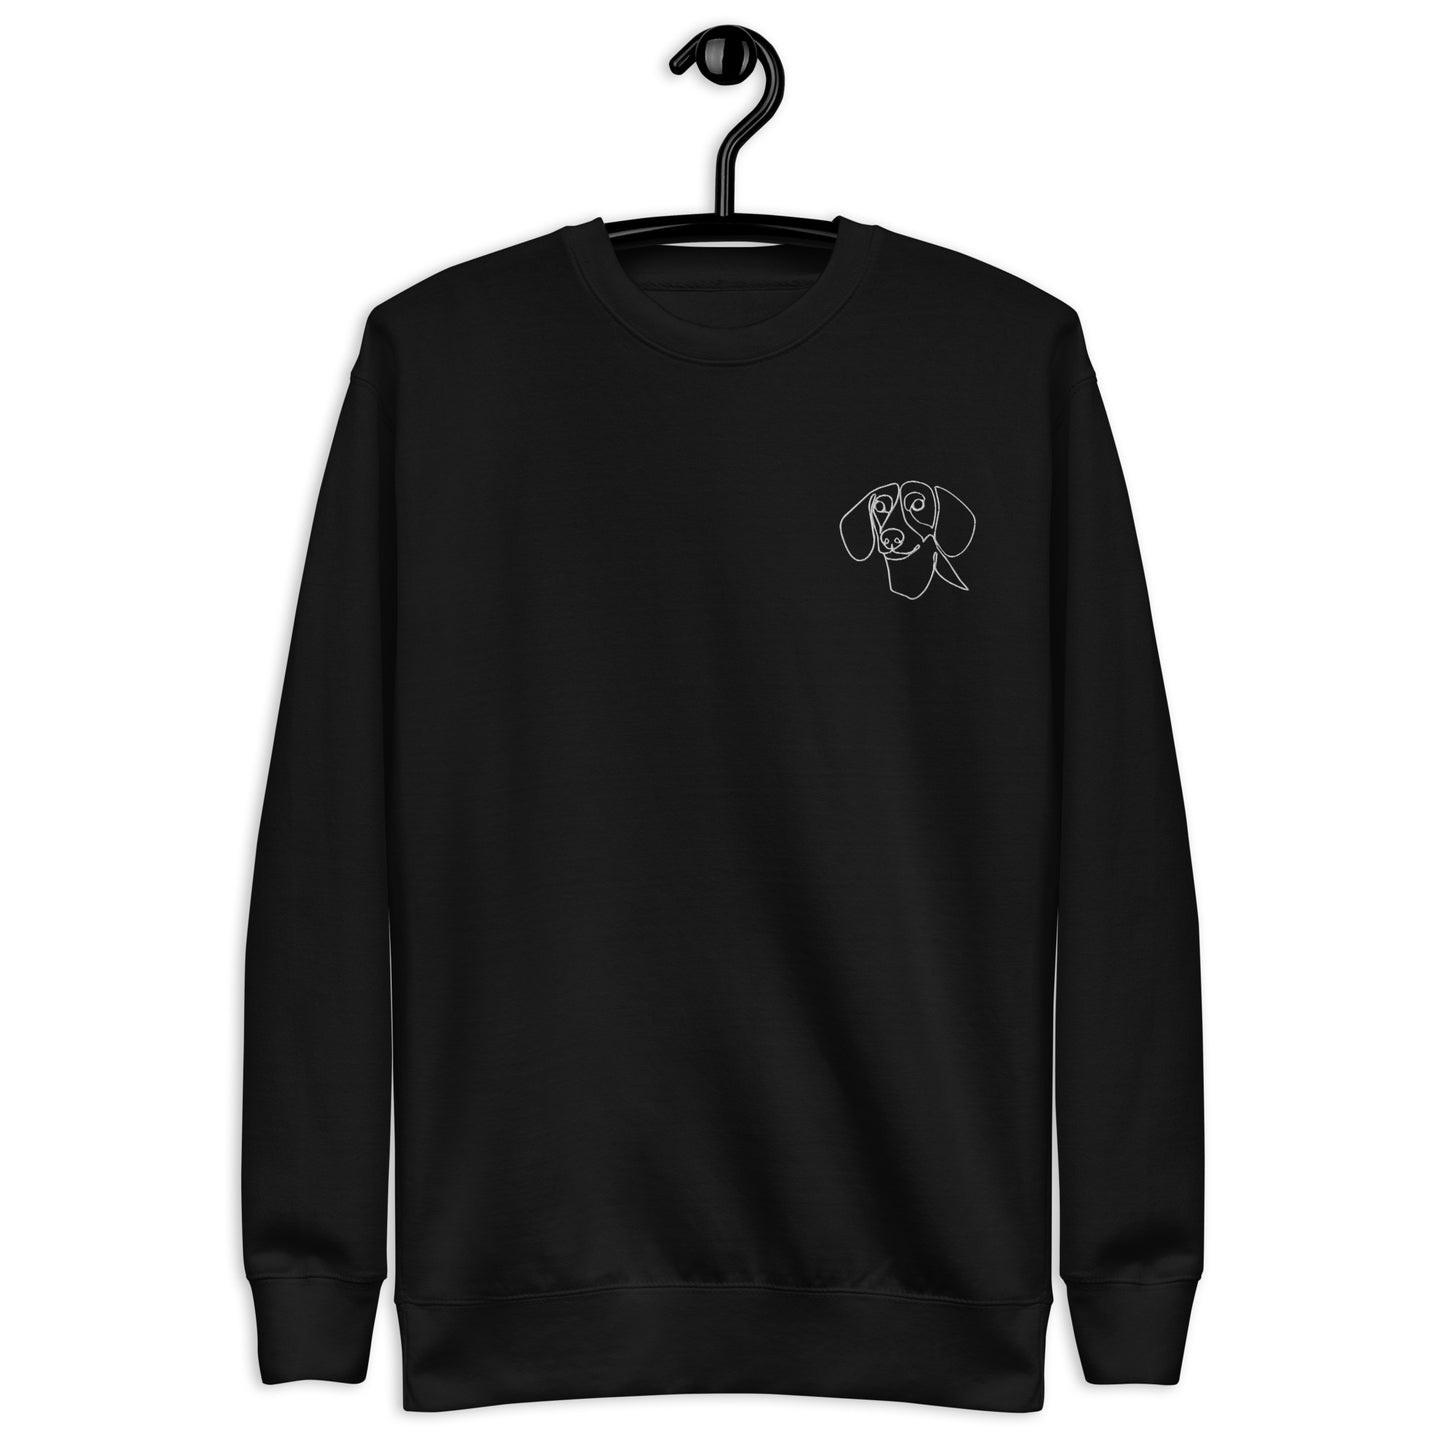 Dachshund Embroidered Unisex Sweatshirt Black